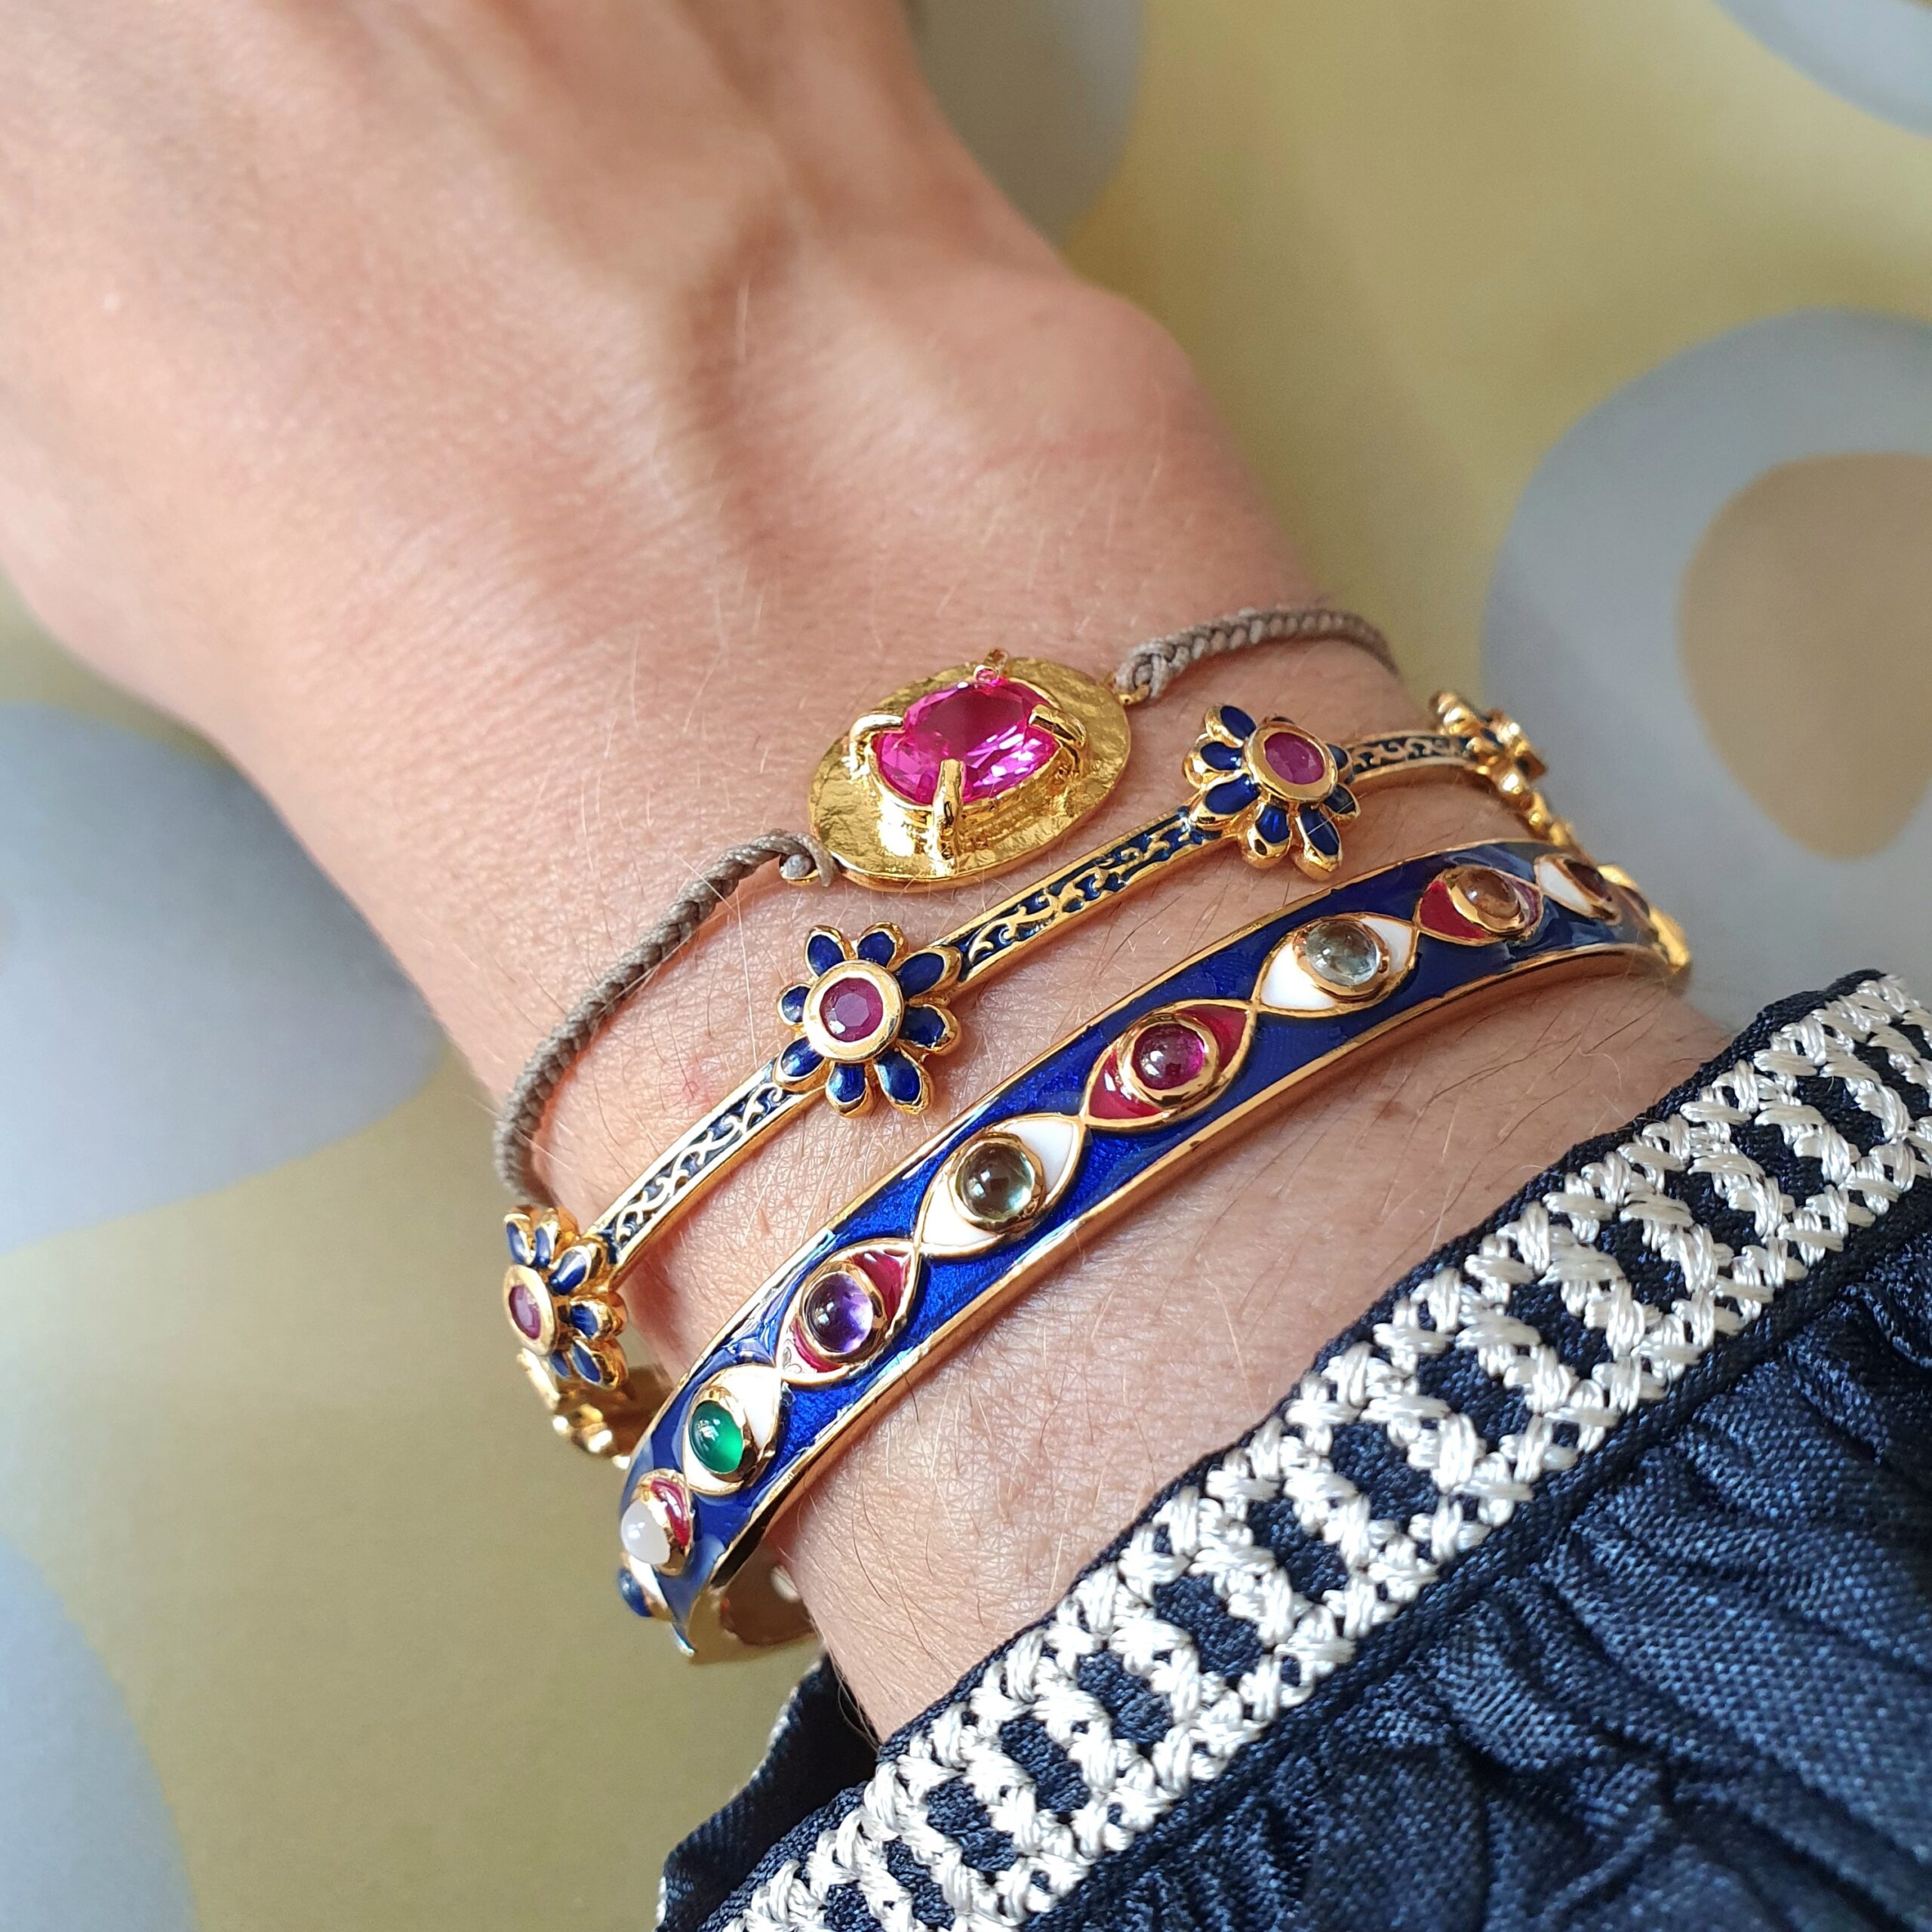 Bangle oeil émail bleu, bangle 6 fleurs rubis, bracelet Talisman topaze rose